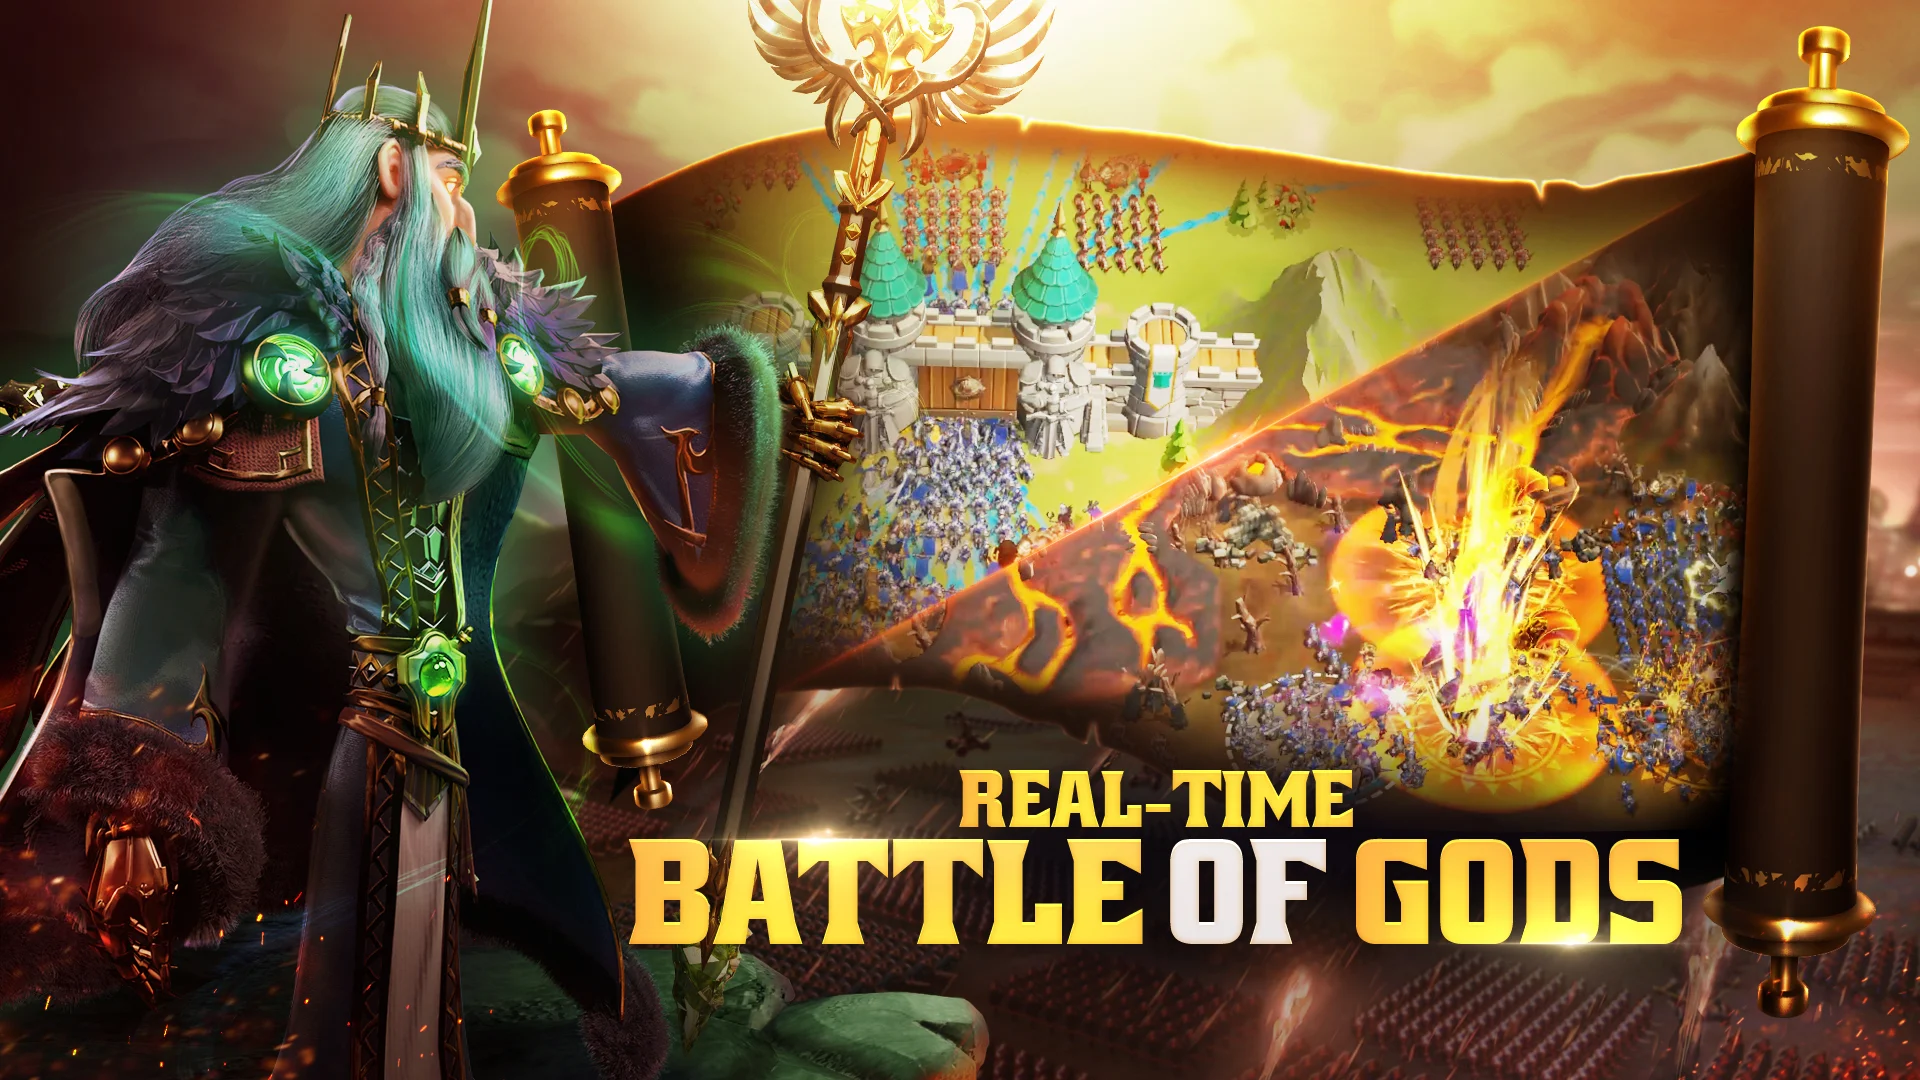 GODSOME: Clash of Gods